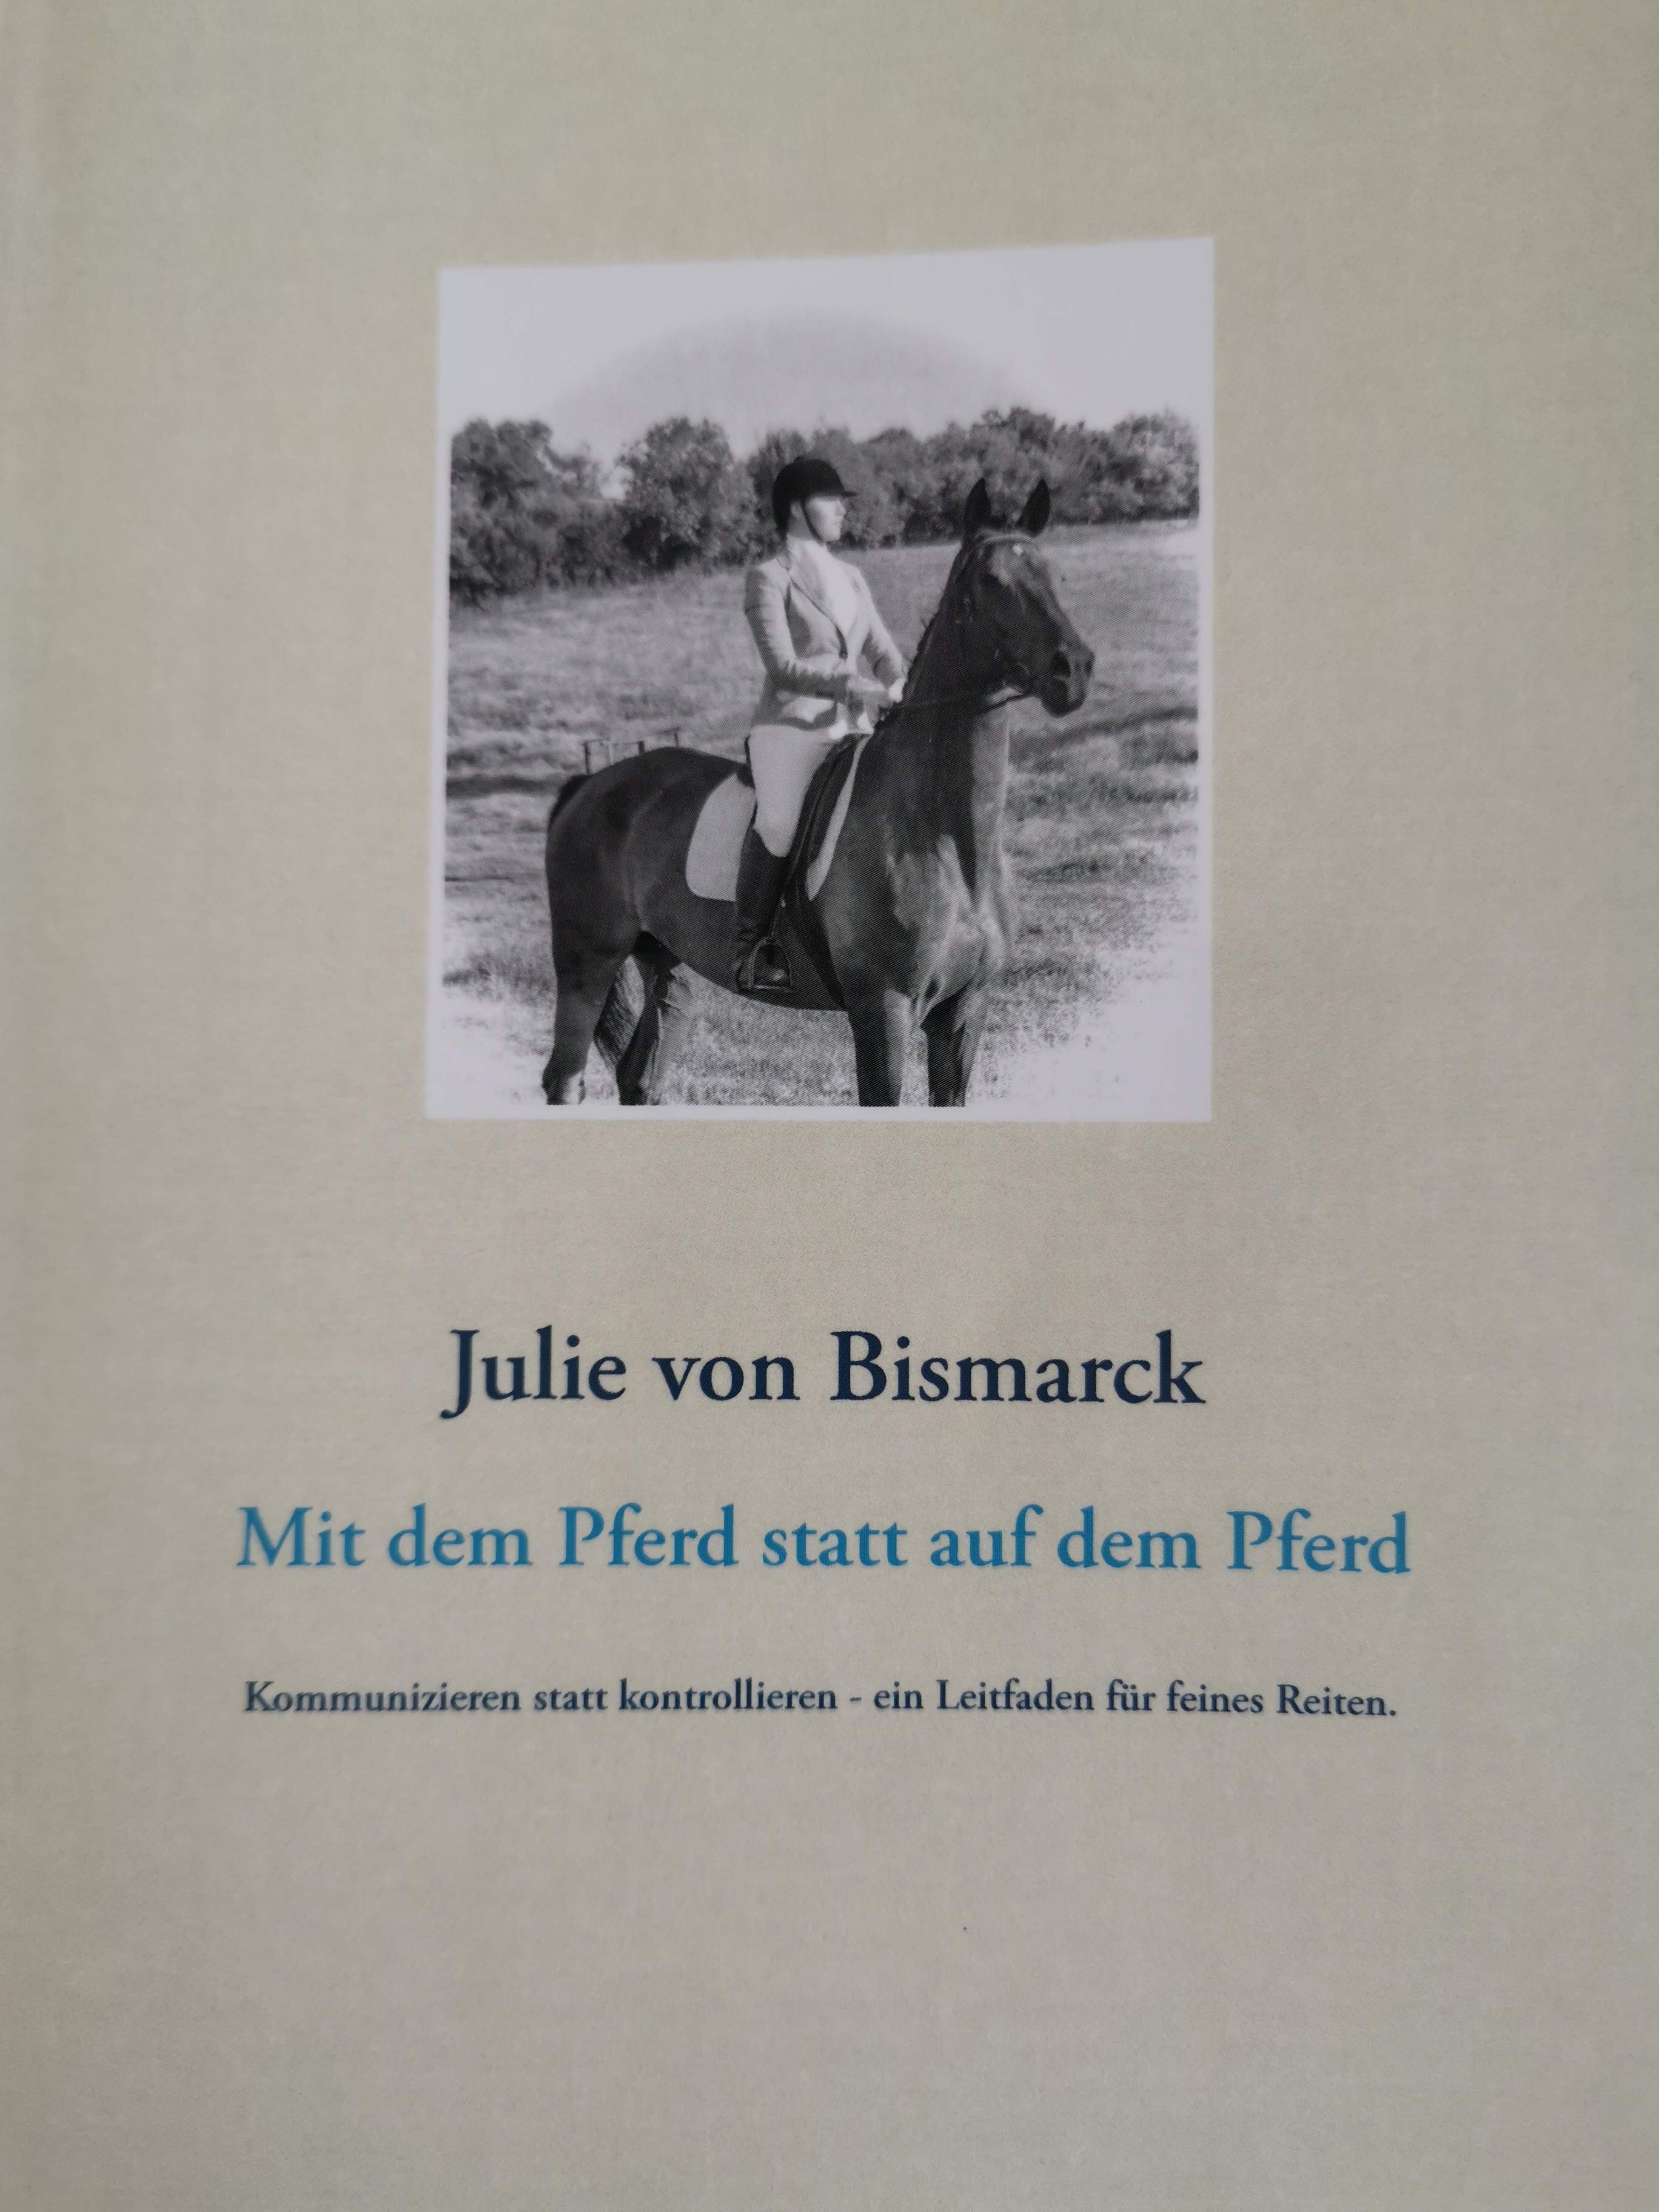 Buchrezension: Mit dem Pferd statt auf dem Pferd von Julie von Bismarck